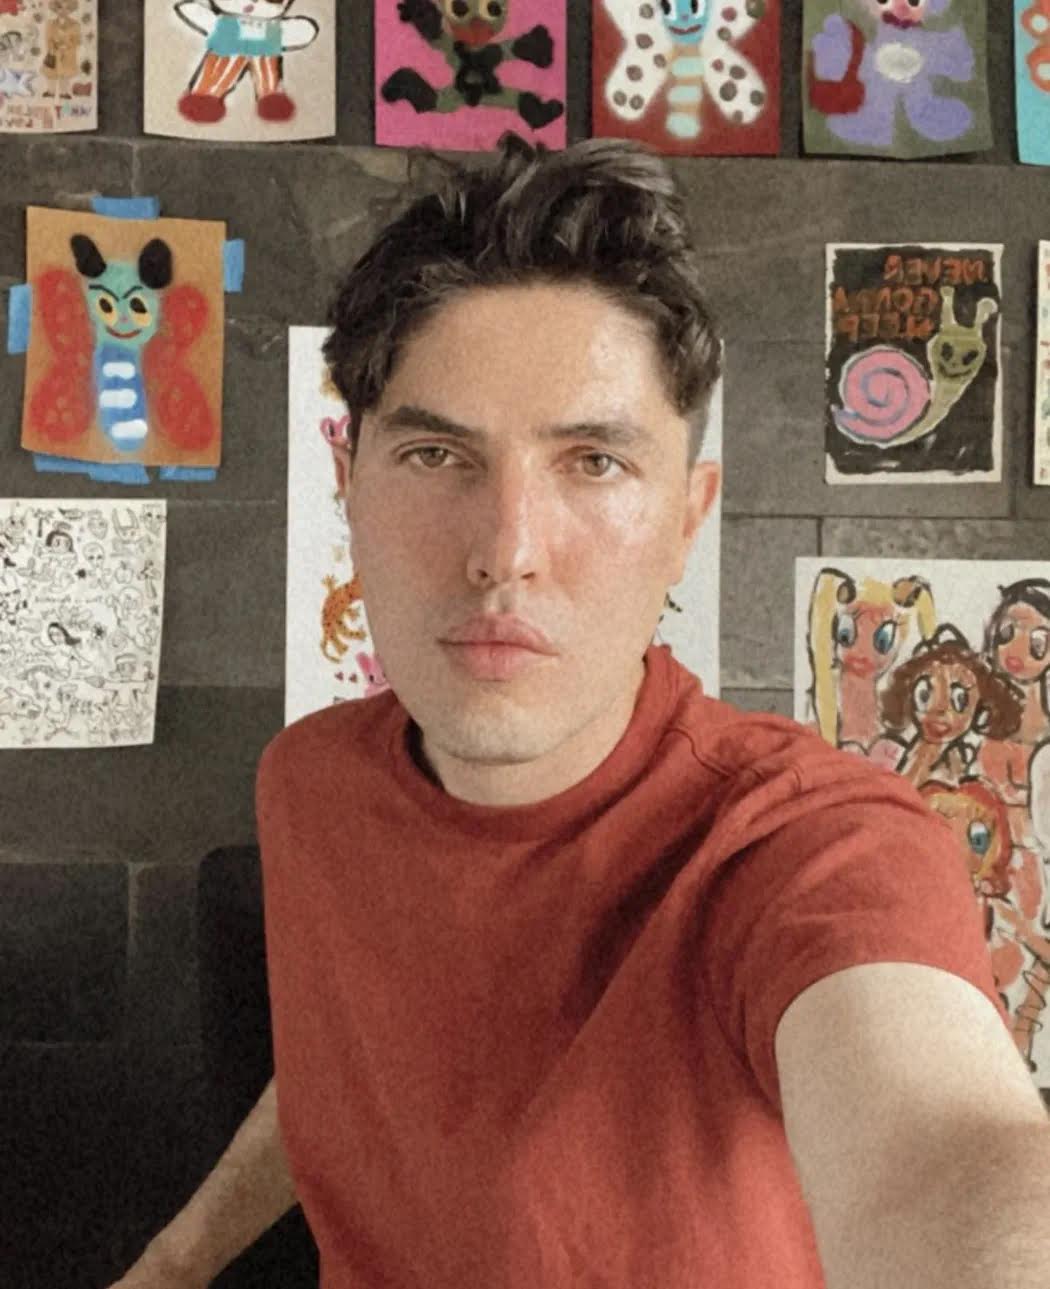 Artist Humberto Cruz poses for selfie